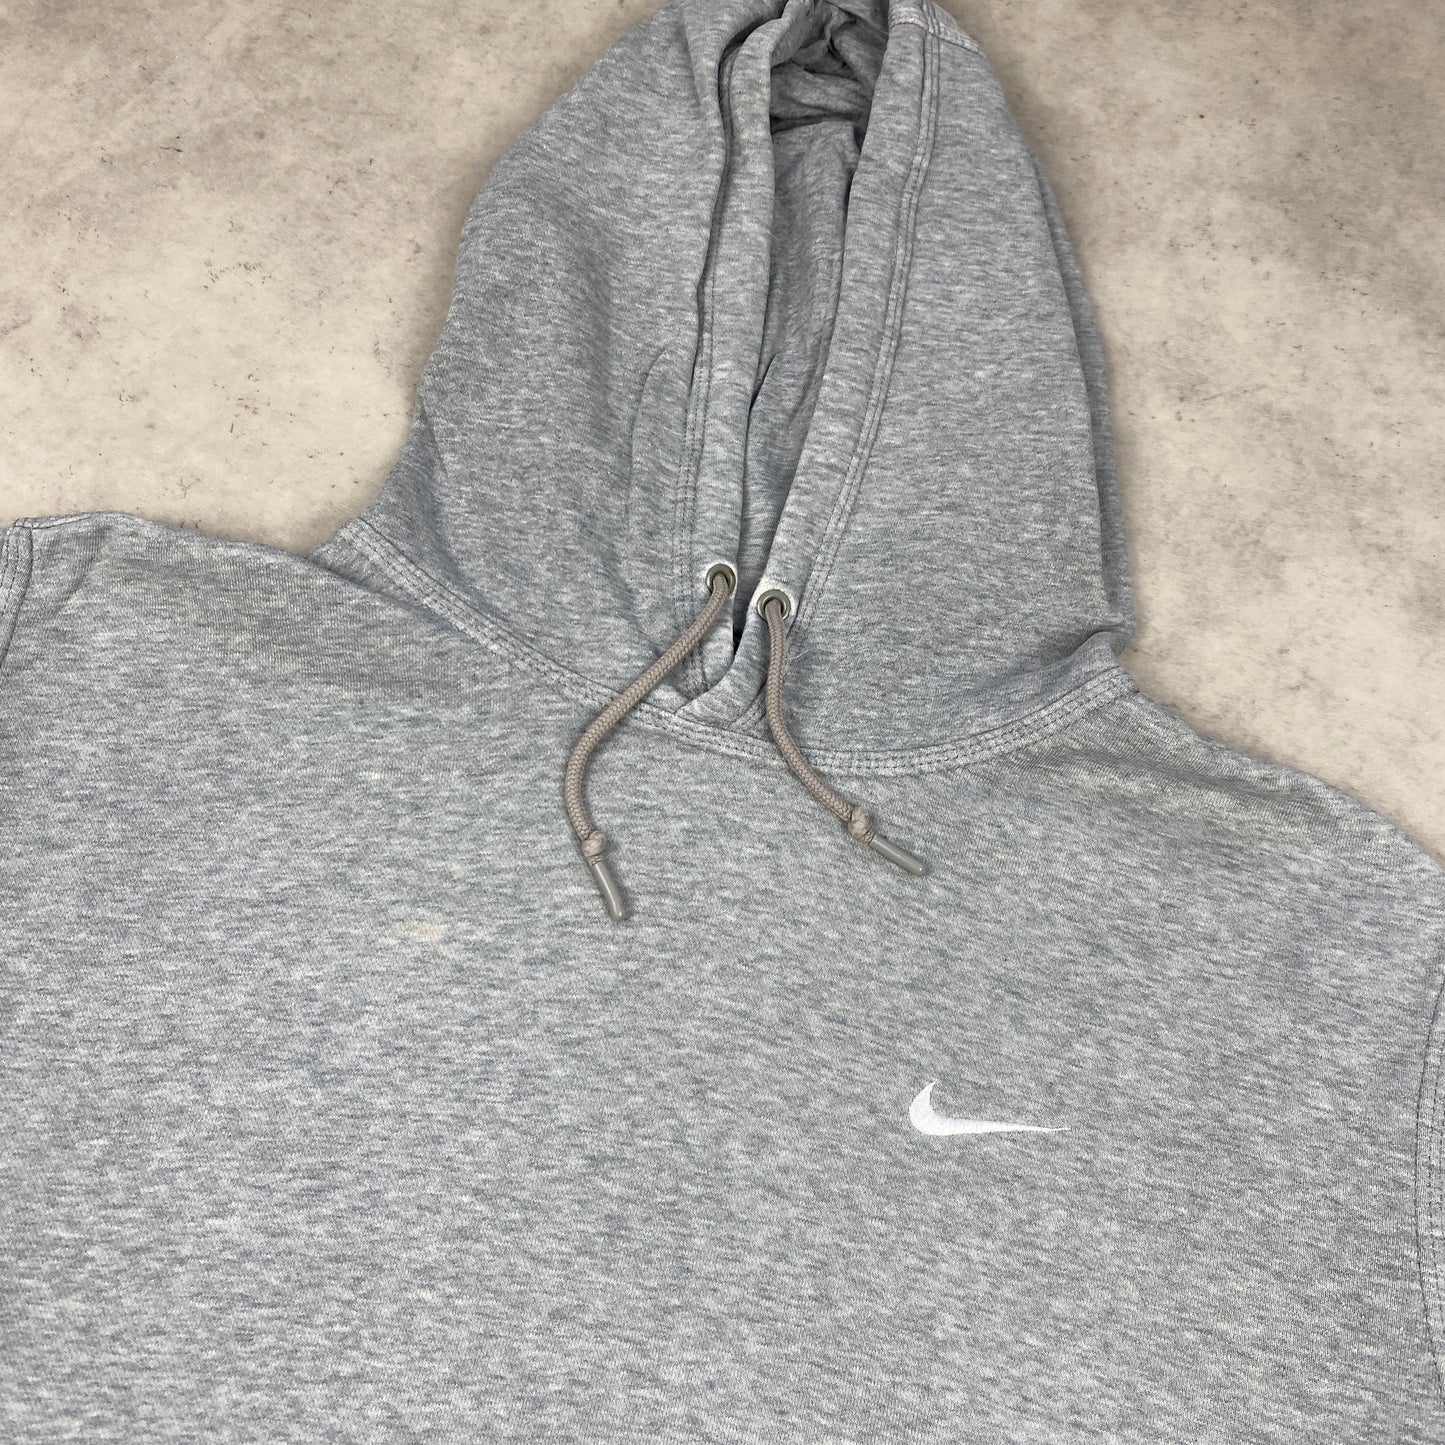 Nike hoodie (L-XL)